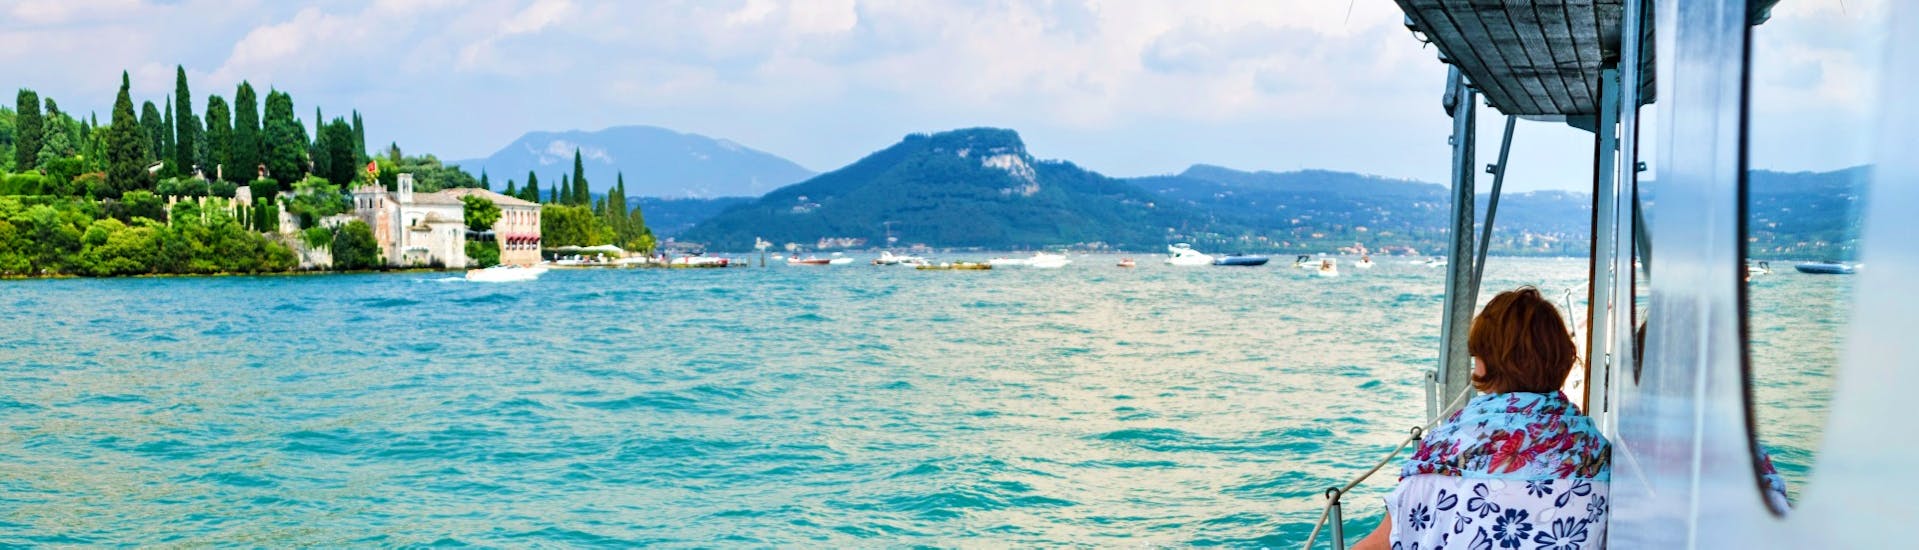 Bellissima vista delle coste del lago di Garda viste dalla barca con GardaVoyager.